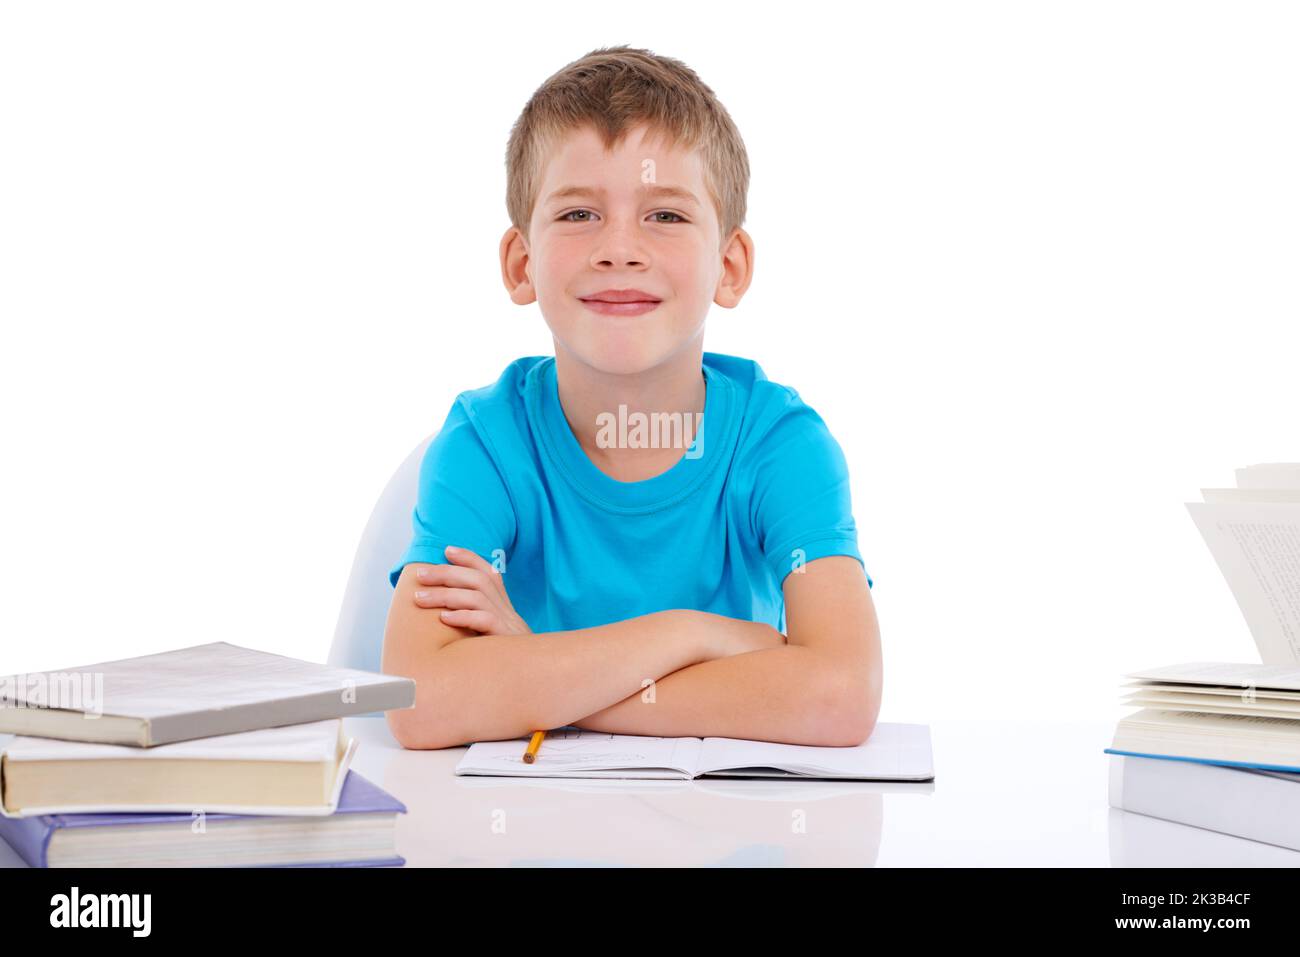 Mi piace studiare duro. Ritratto di un ragazzo sorridente seduto con pile di libri su sfondo bianco. Foto Stock